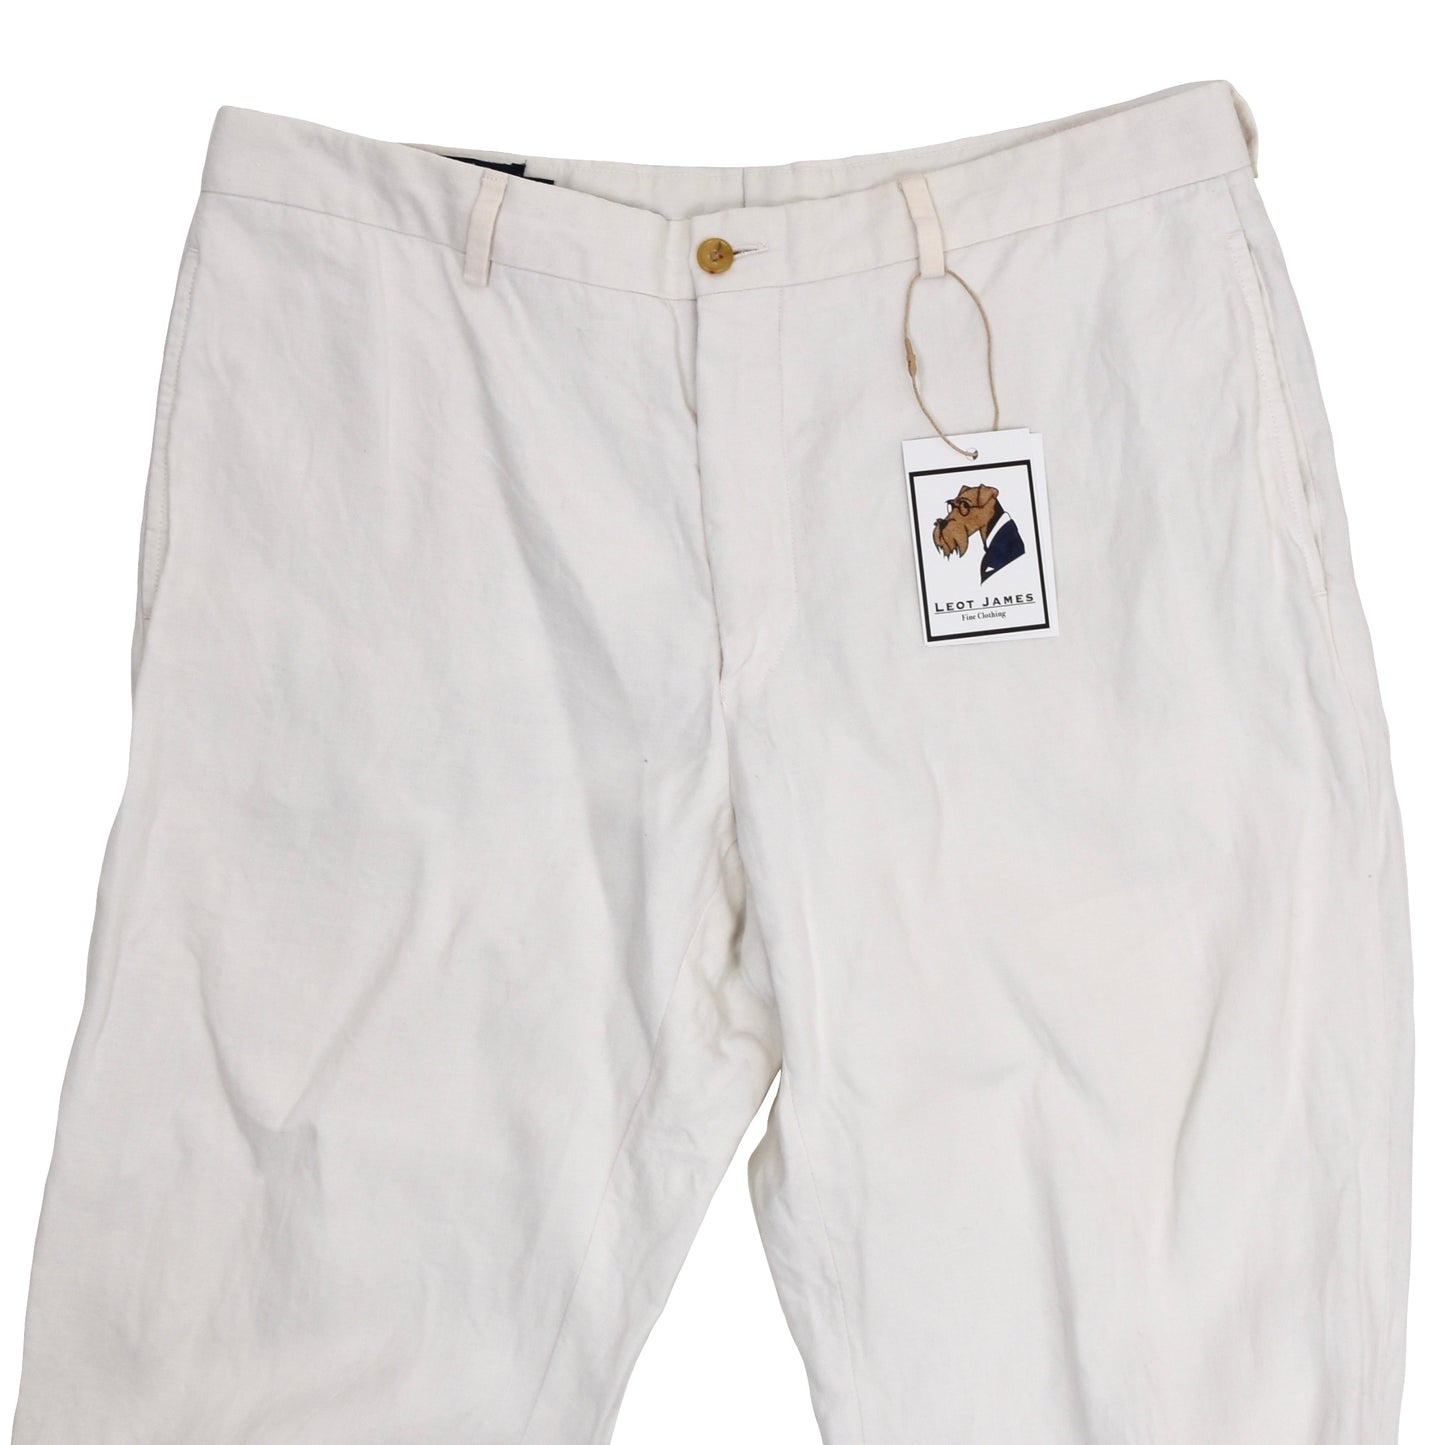 Polo Ralph Lauren Hose aus 100 % Leinen, Größe 34 – Weiß